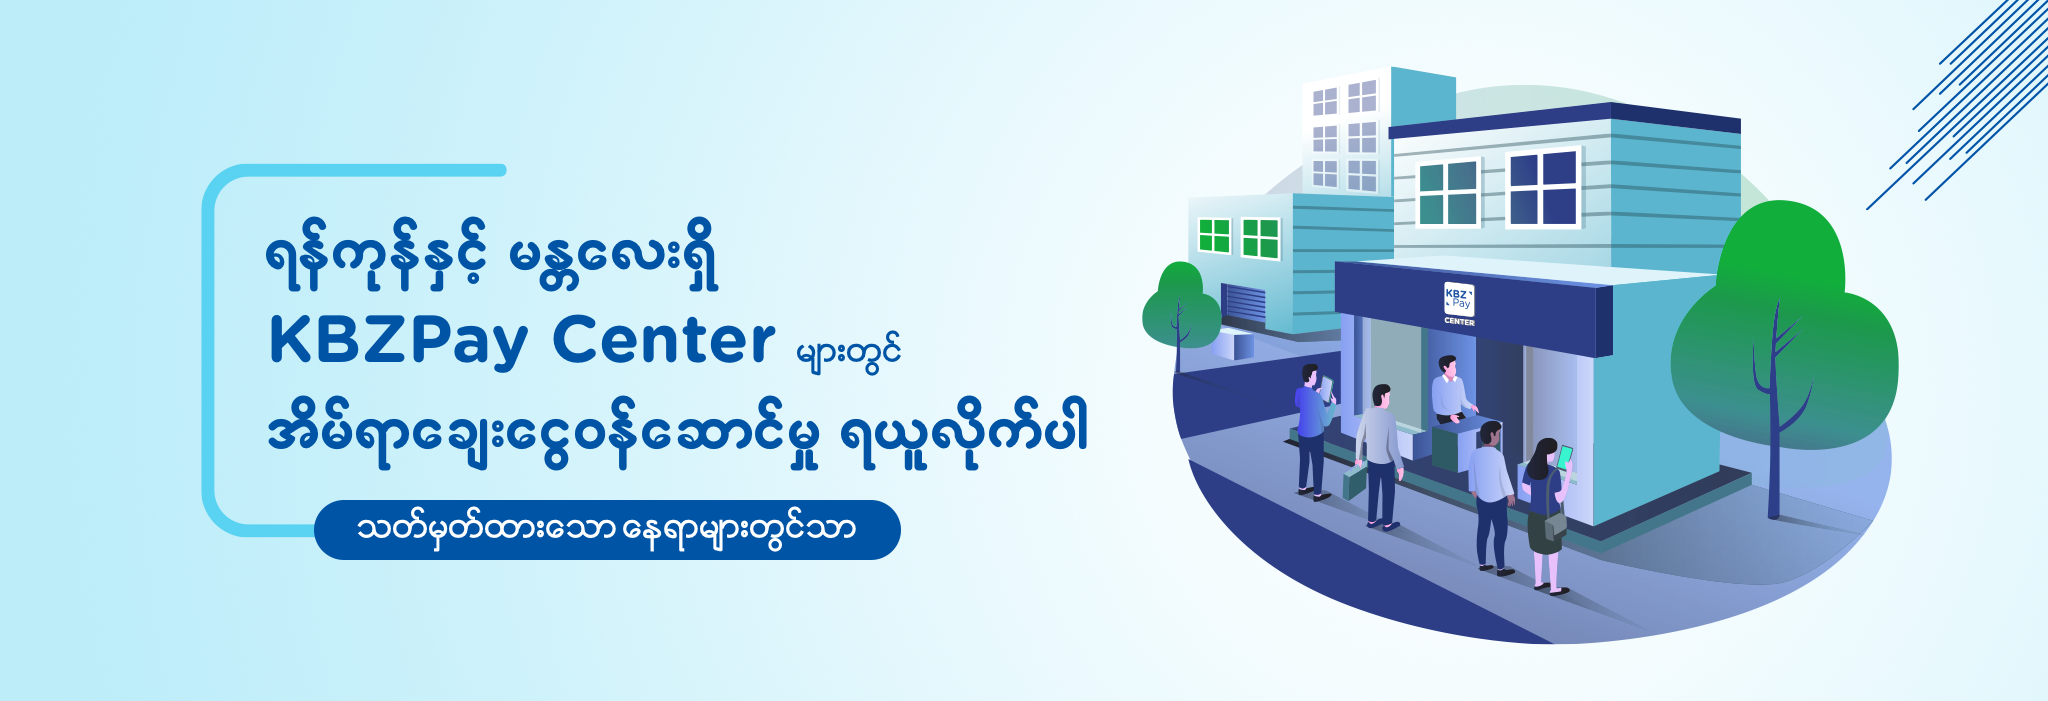 KBZPay Centers in Myanmar